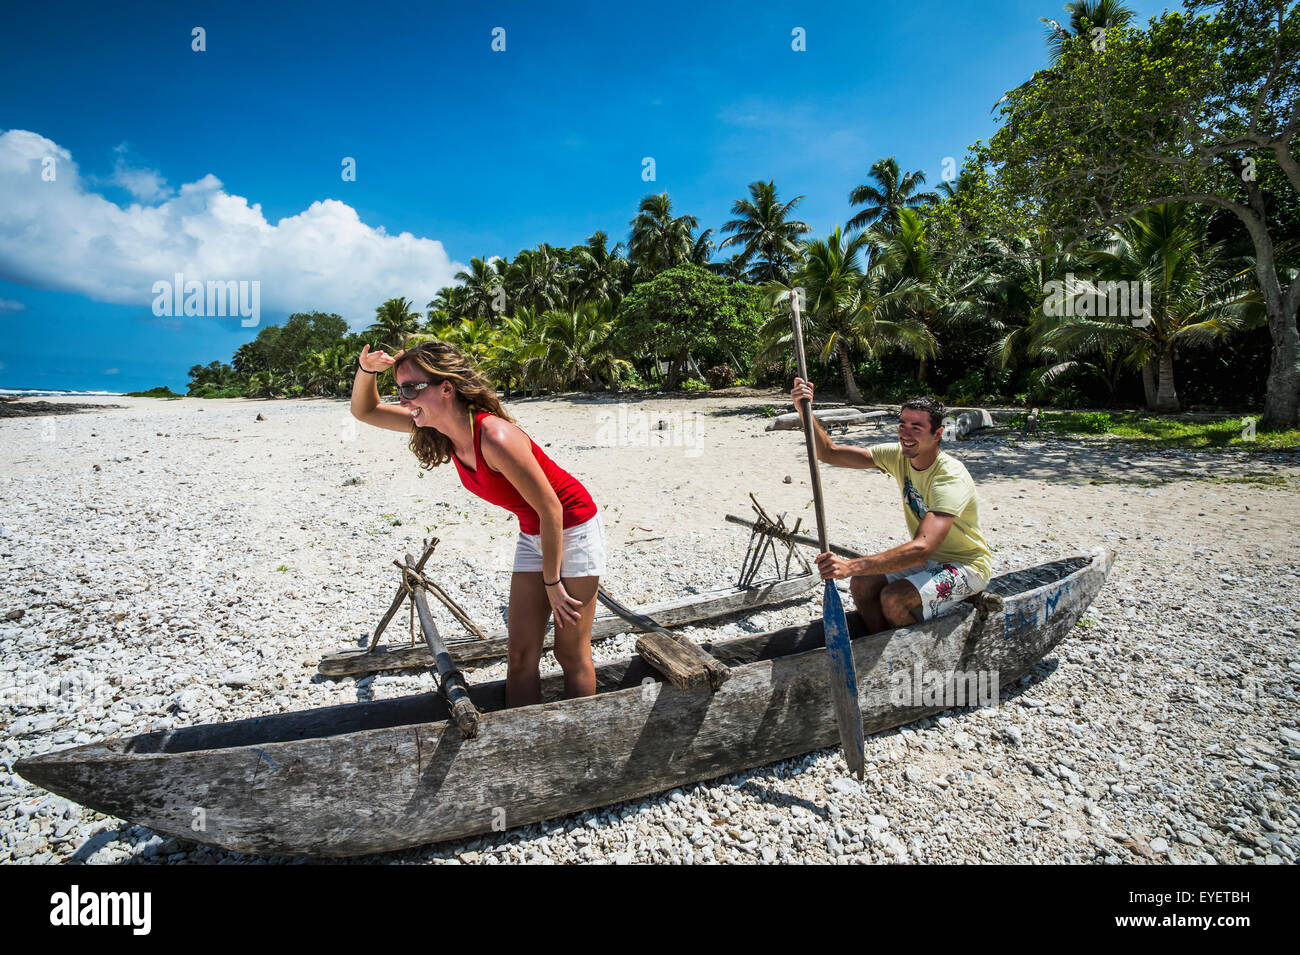 Les touristes jouant dans un bateau en bois sur la plage ; l'île de Tanna, Vanuatu Banque D'Images